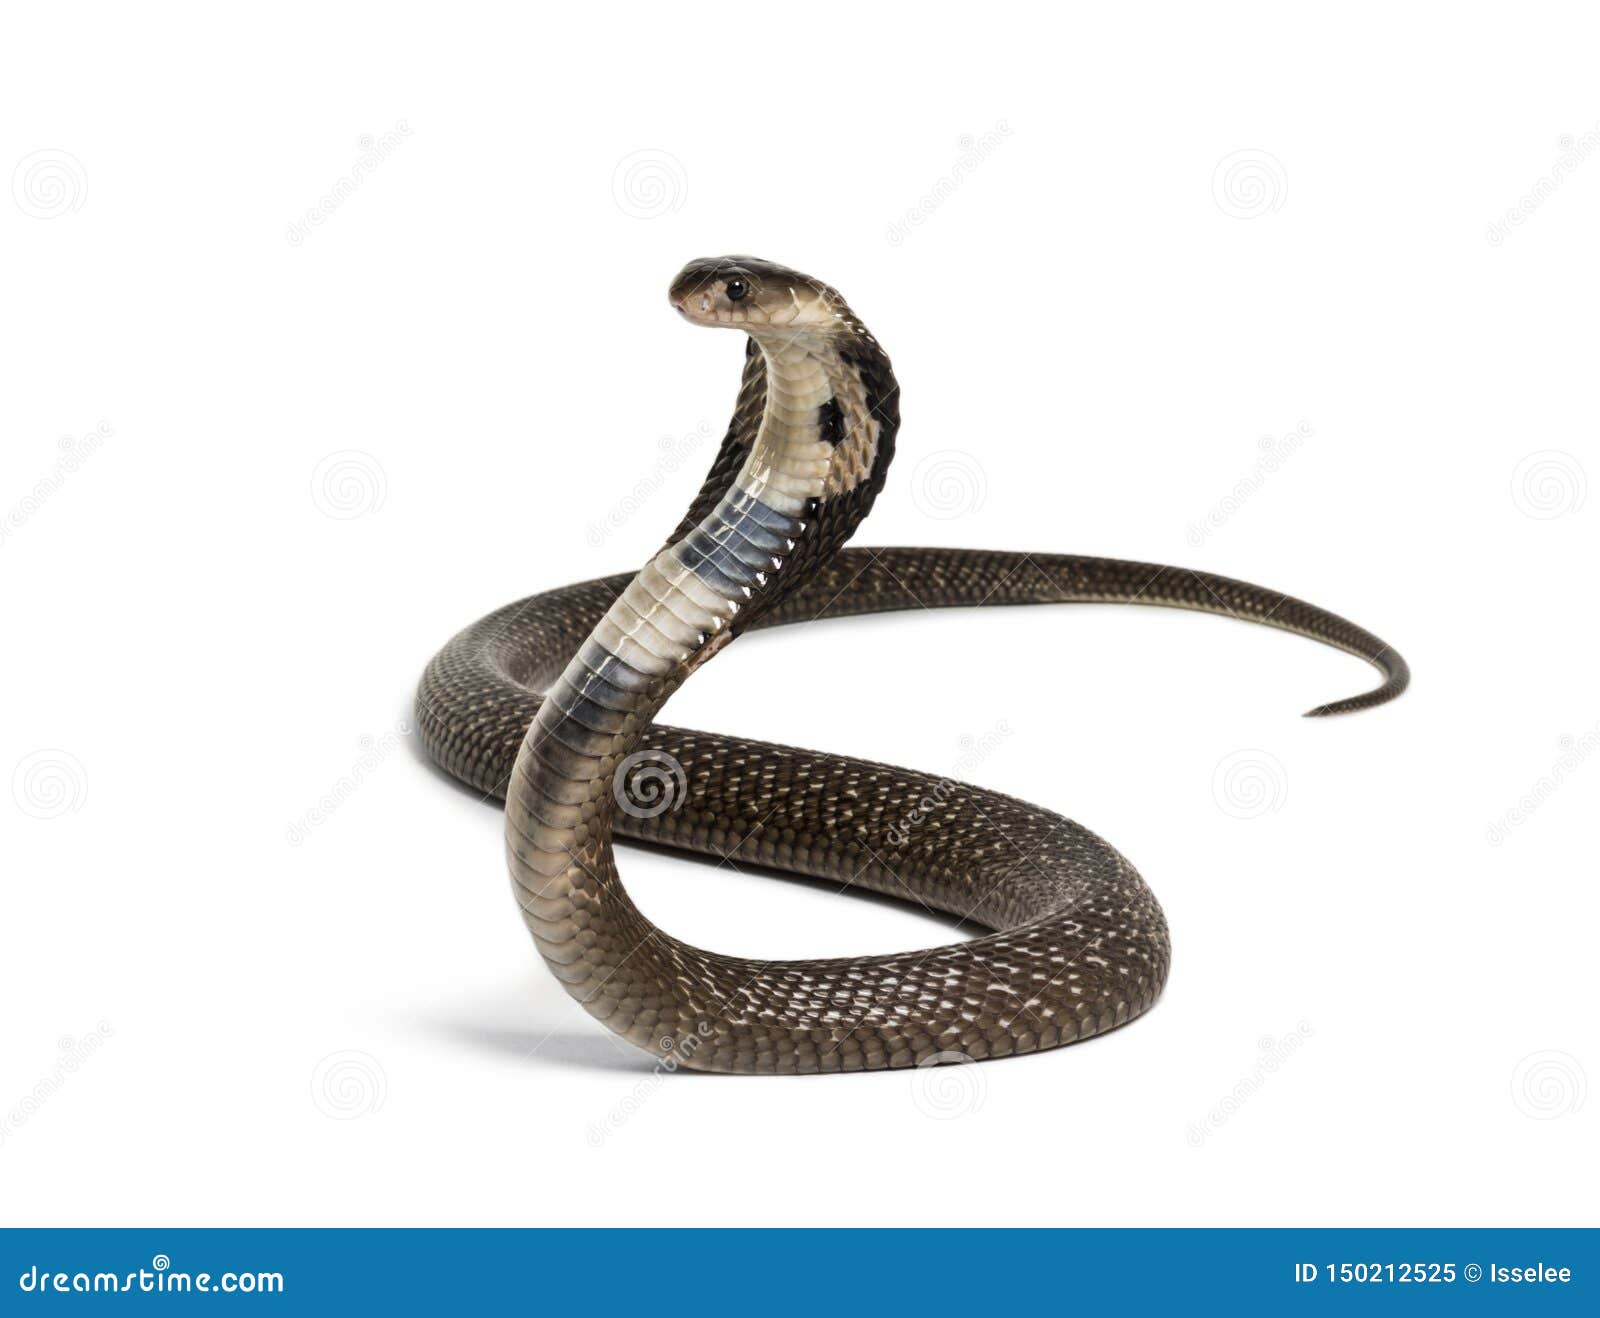 king cobra, ophiophagus hannah, venomous snake against white